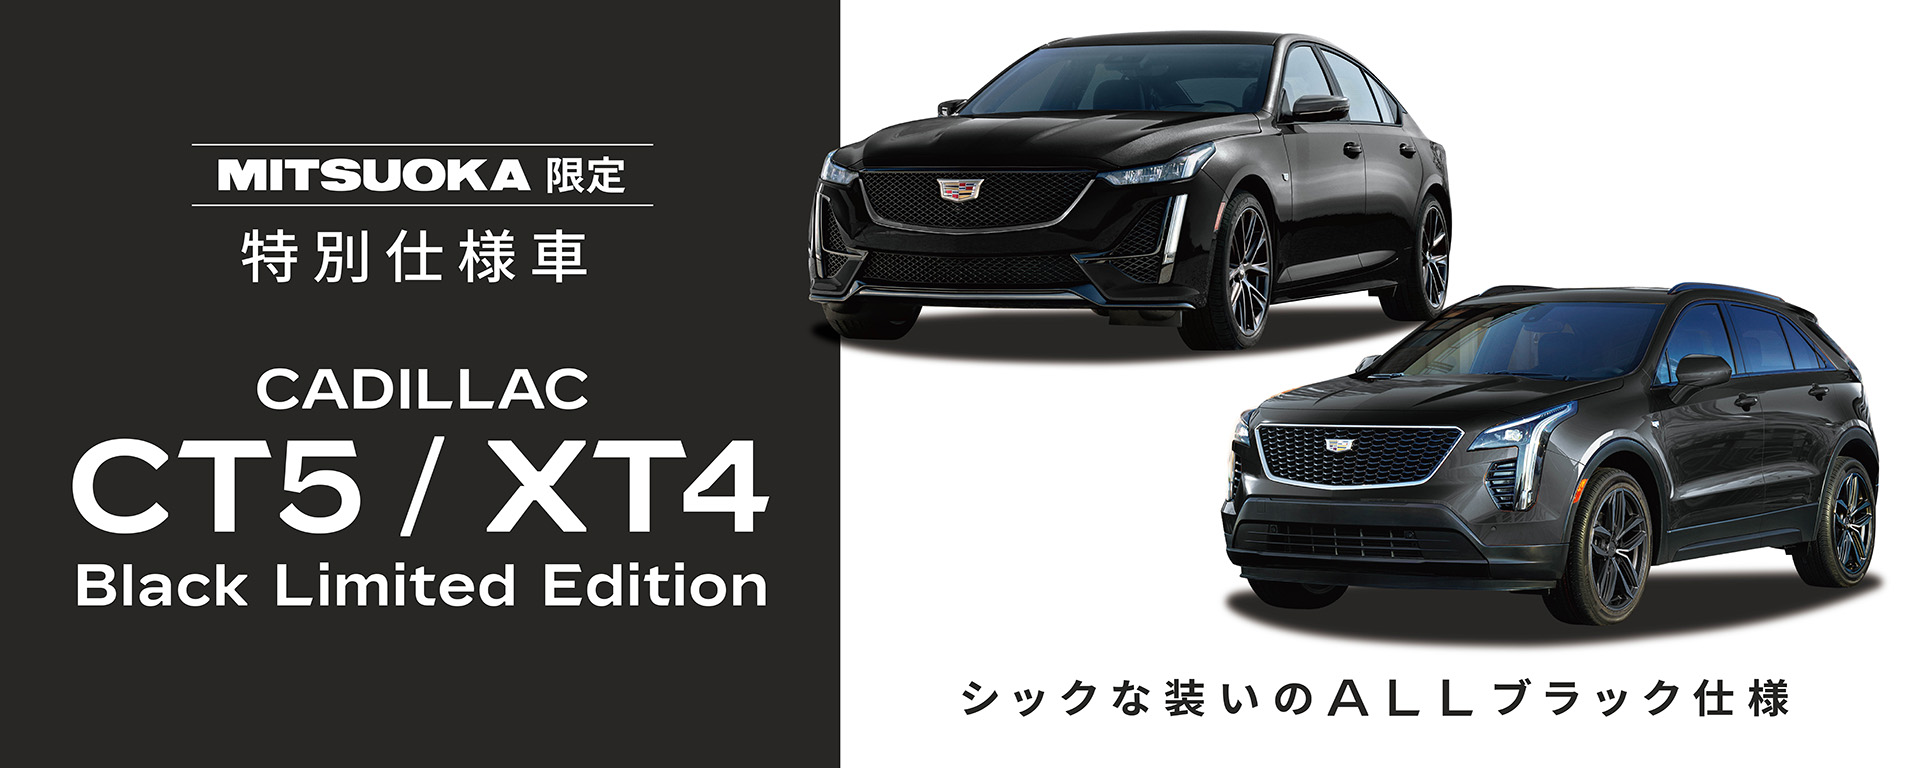 【 特別仕様車 Black Limited Edition 】キャデラック CT5/XT4